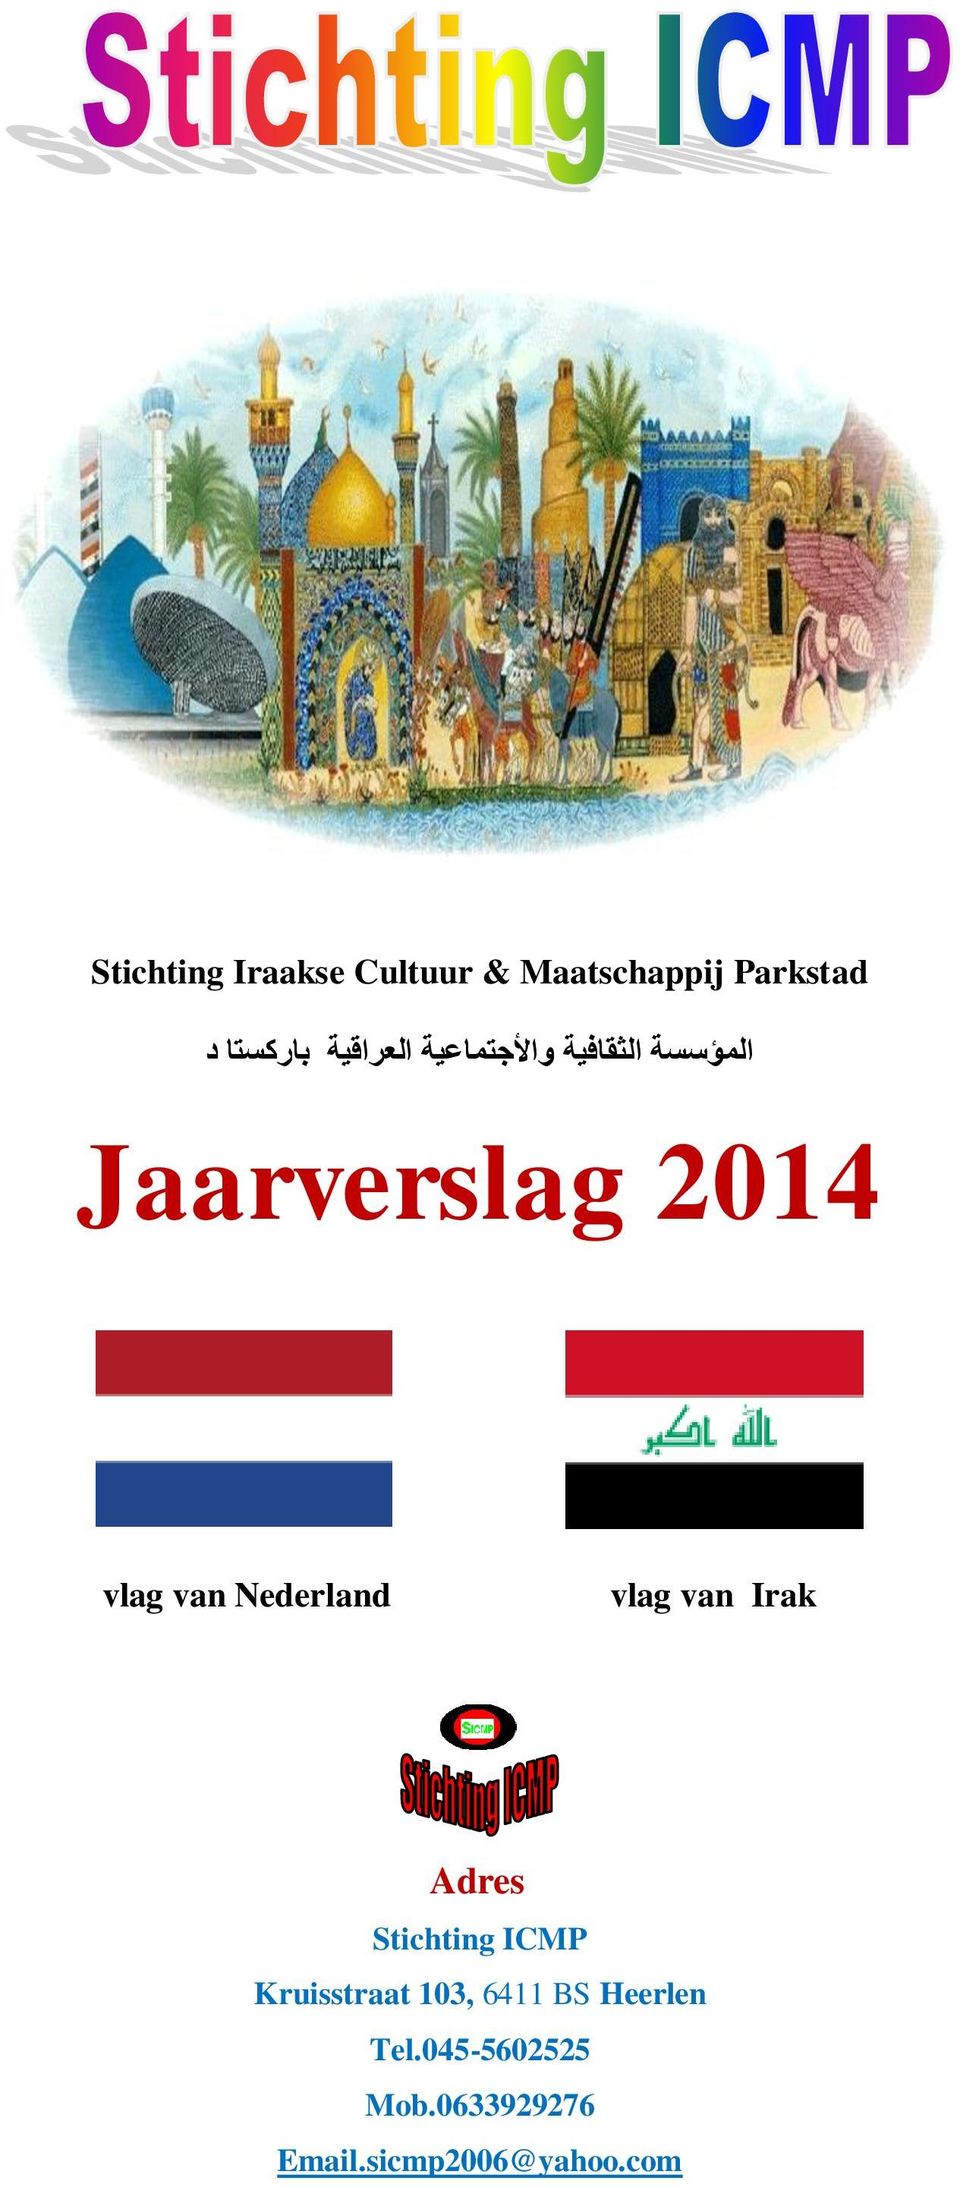 van Nederland vlag van Irak Adres Stichting ICMP Kruisstraat